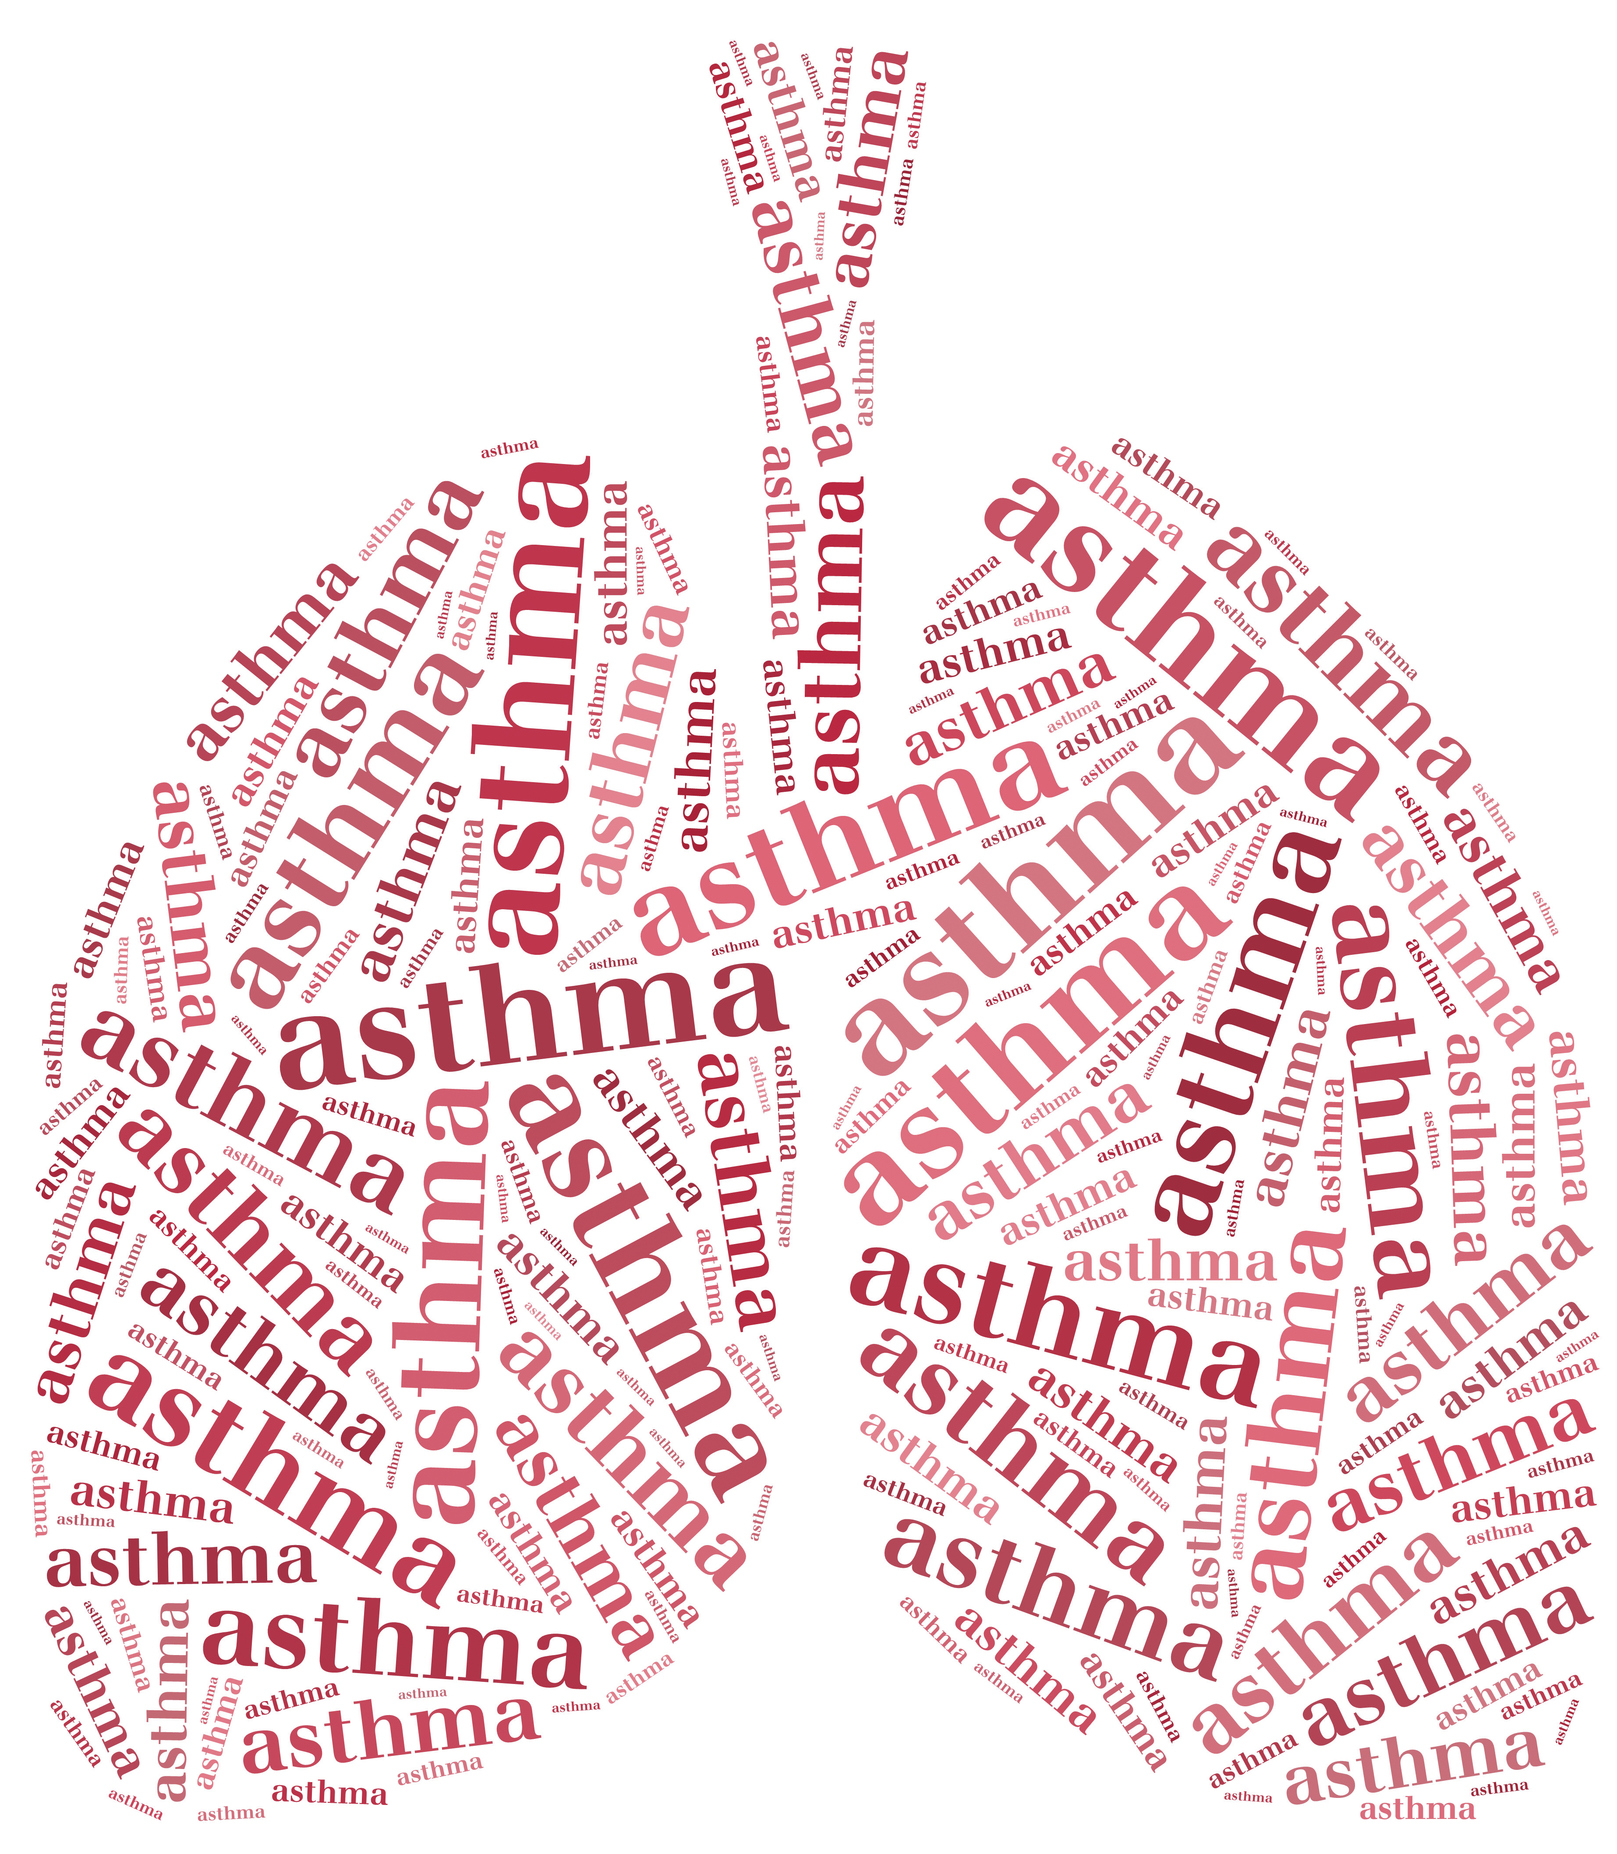 एक महीने में अस्थमा, दमा ,सुखी खांसी ,साँस की समस्या का सफल आयुर्वेदिक इलाज